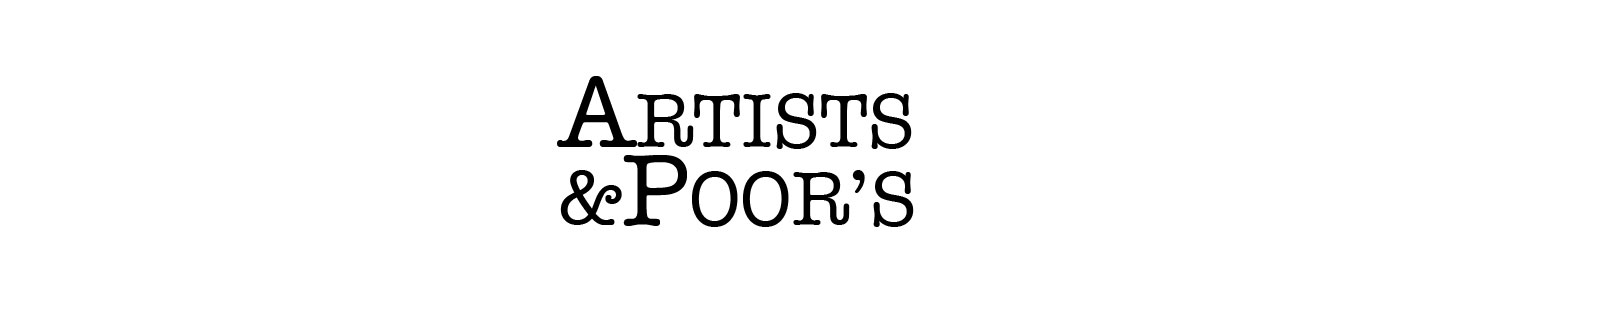 ARTISTS&POOR'S